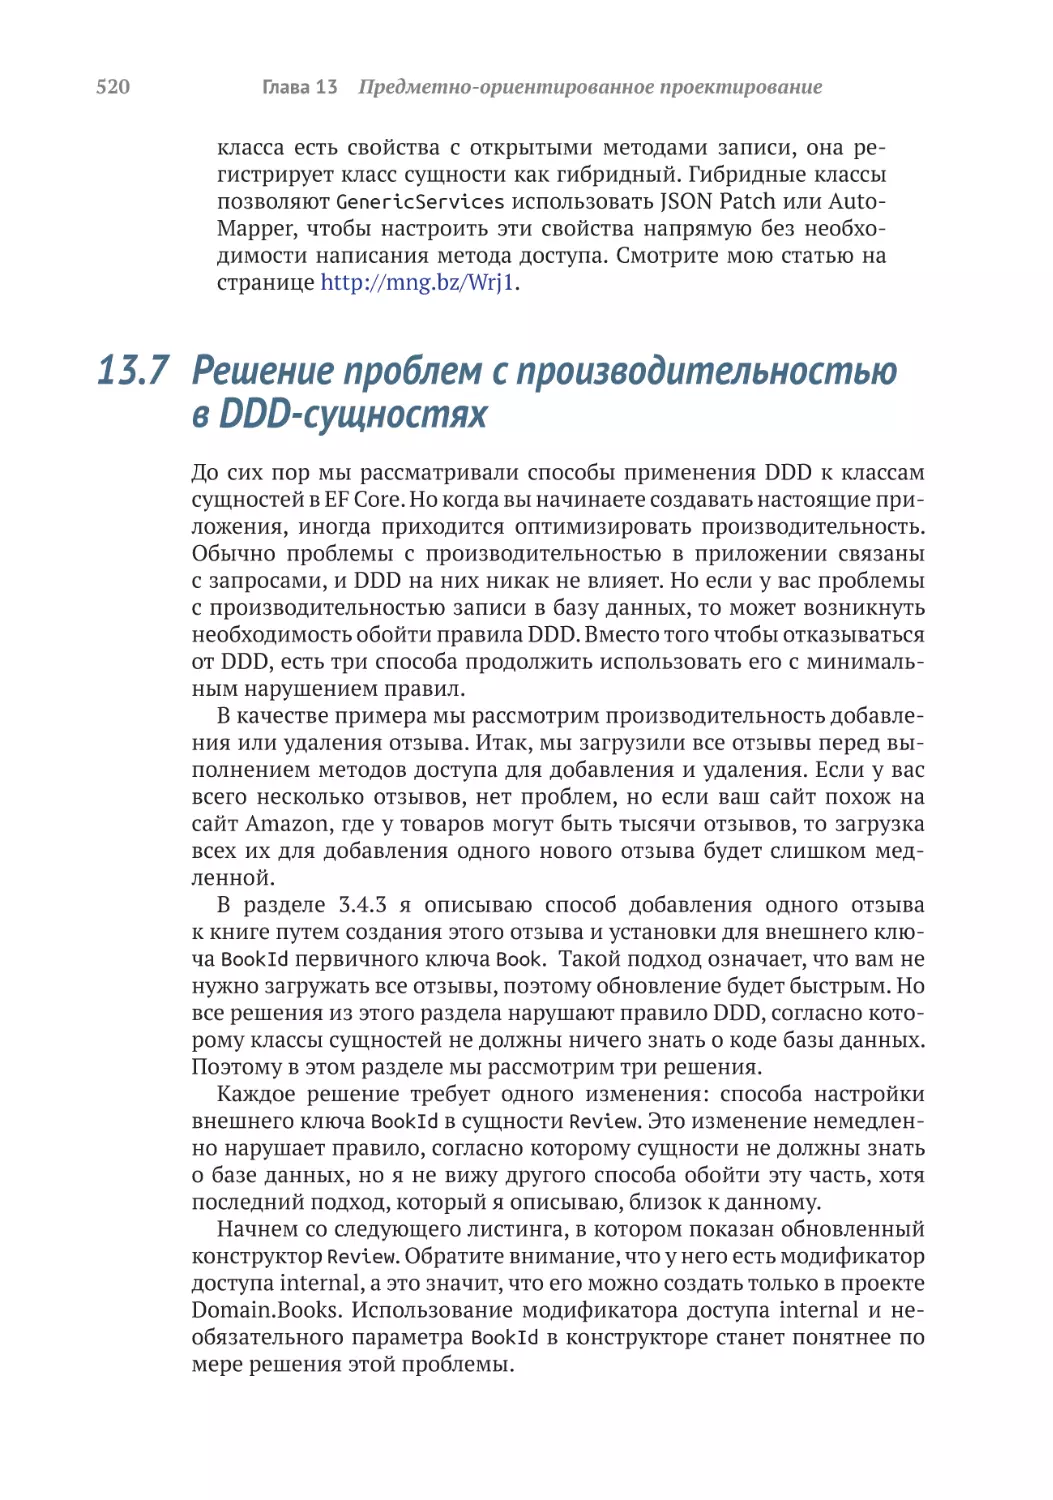 13.7	Решение проблем с производительностью в DDD-сущностях